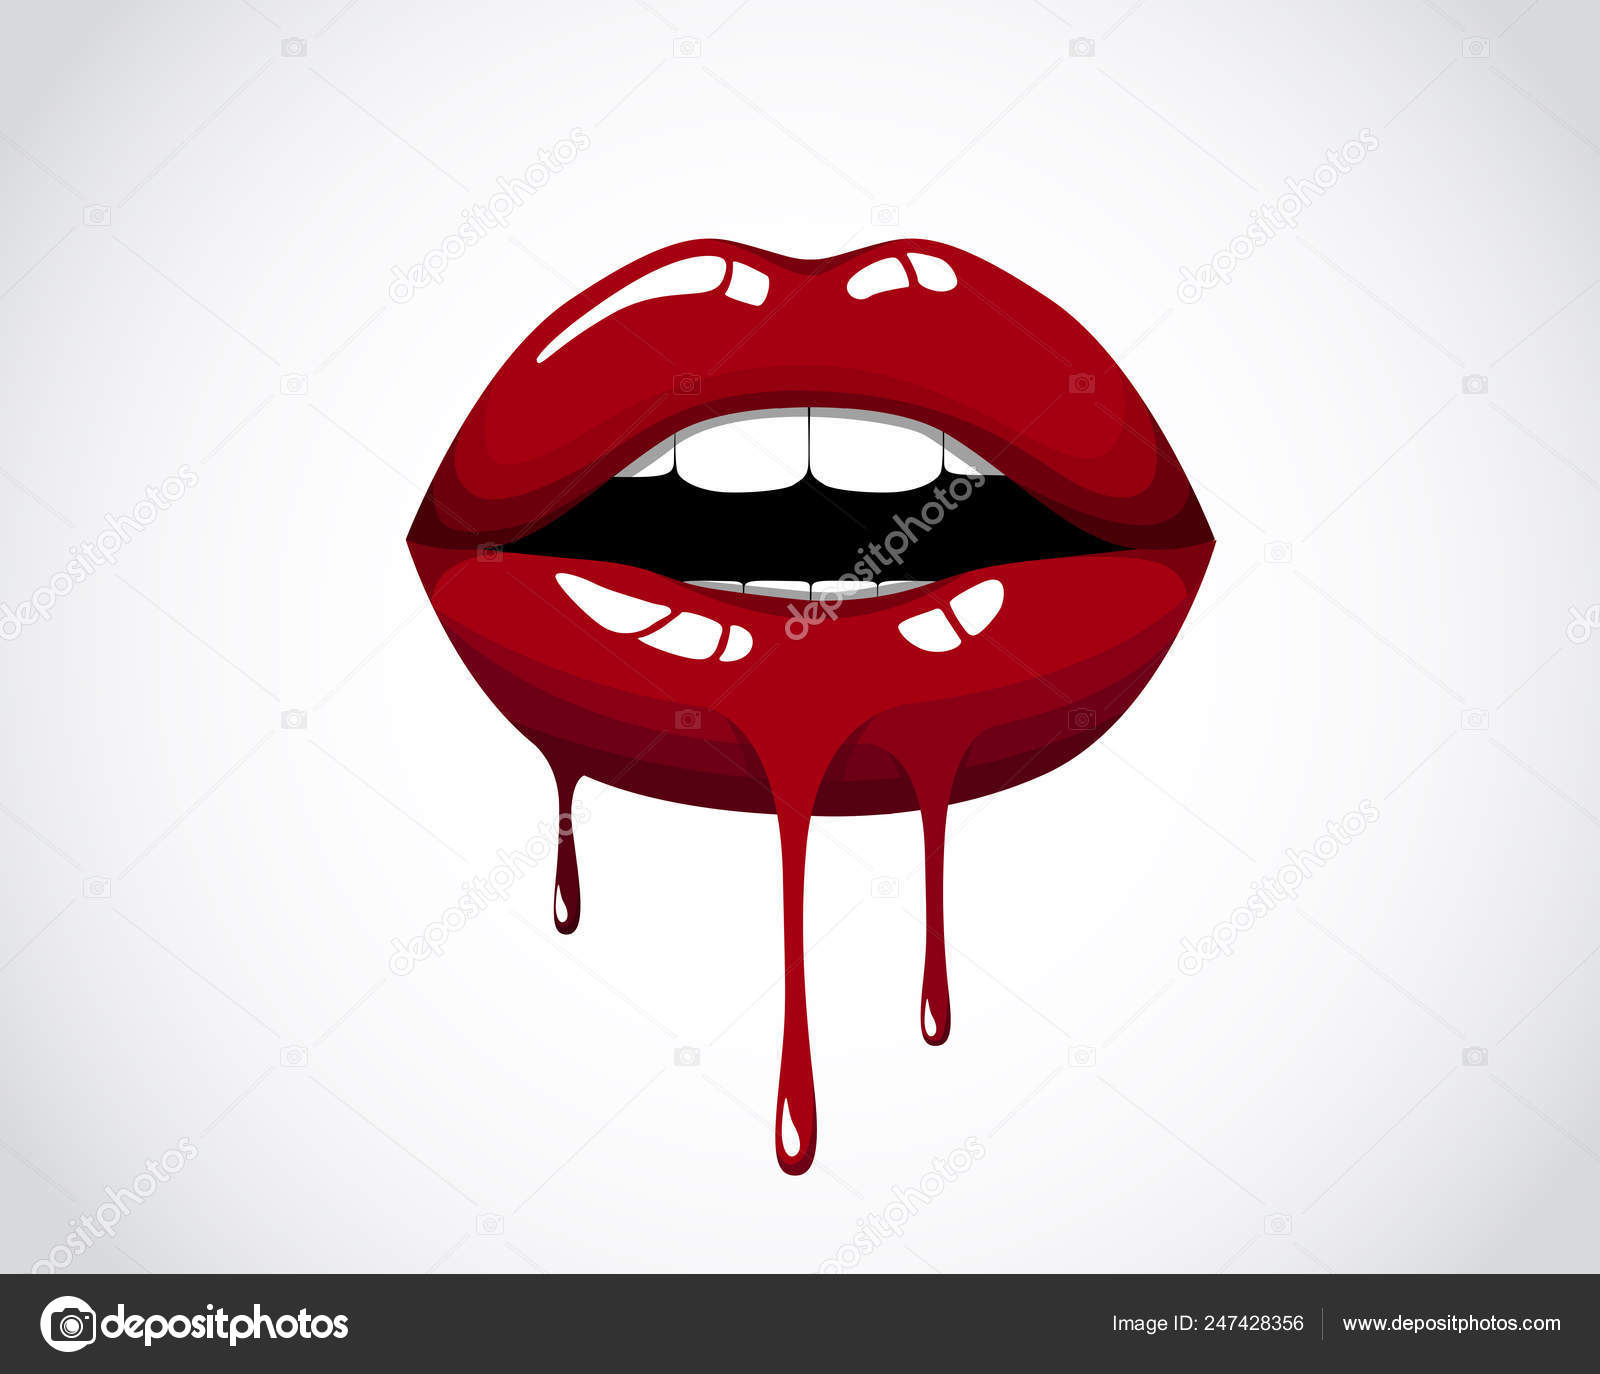 Boca com lábios sensuais — Ilustração de Stock